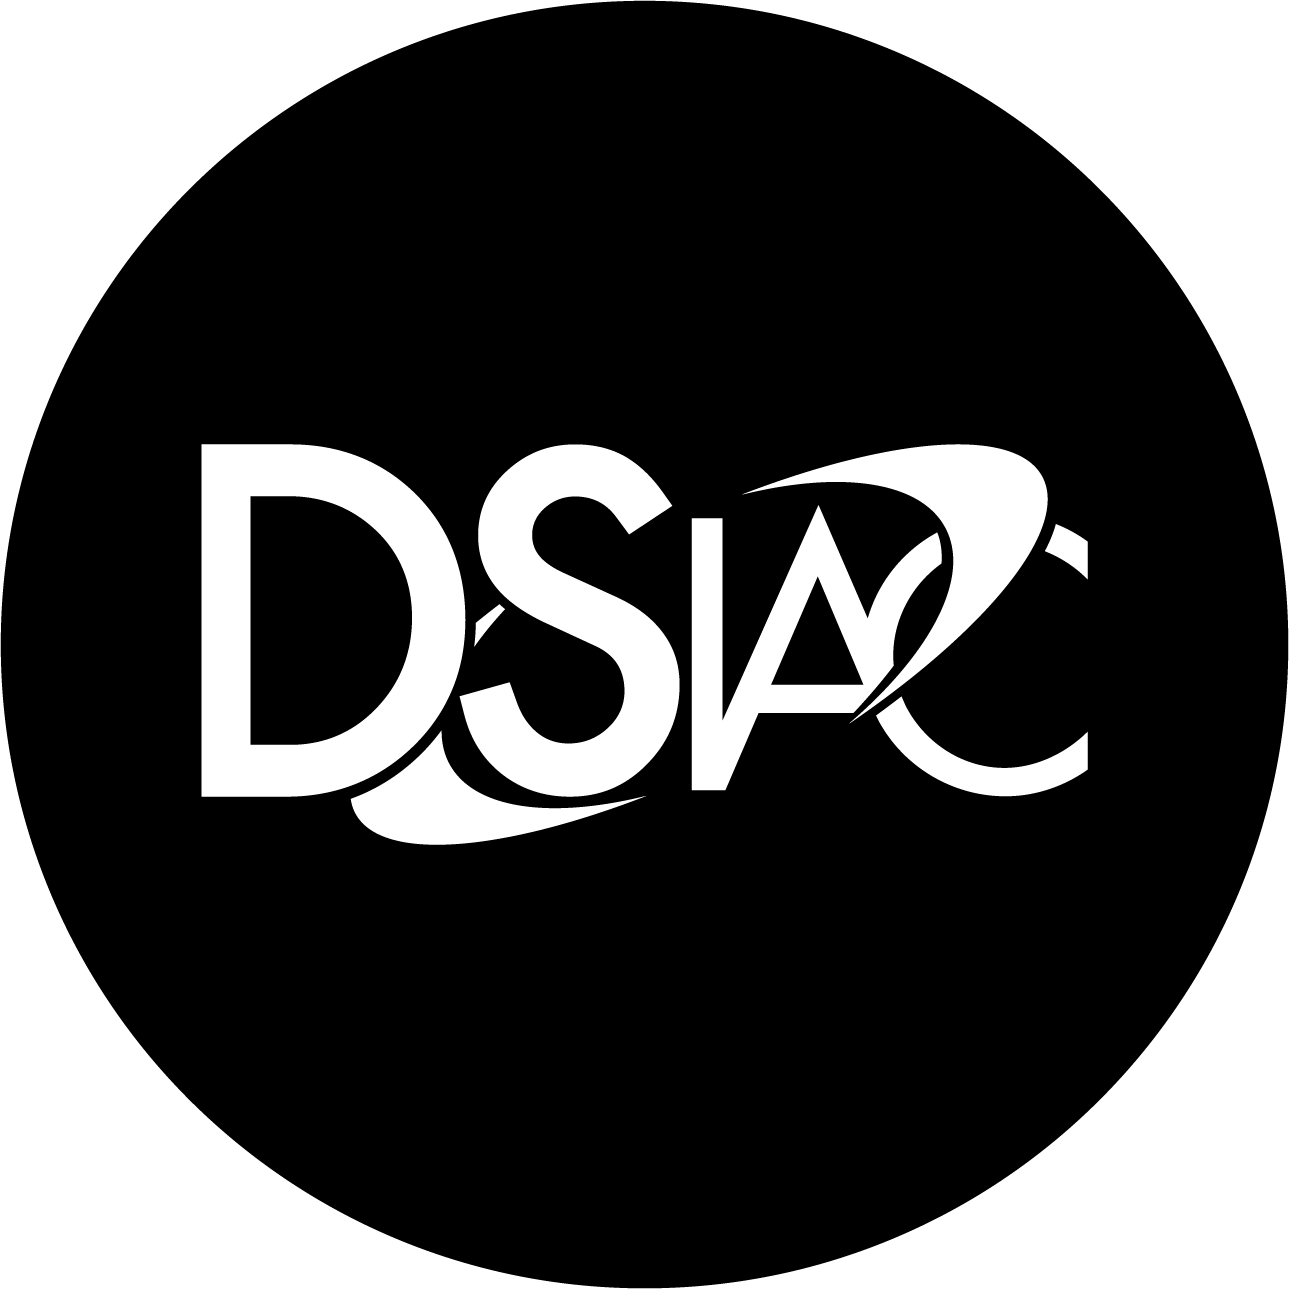 DSIAC White_Black Circle logo